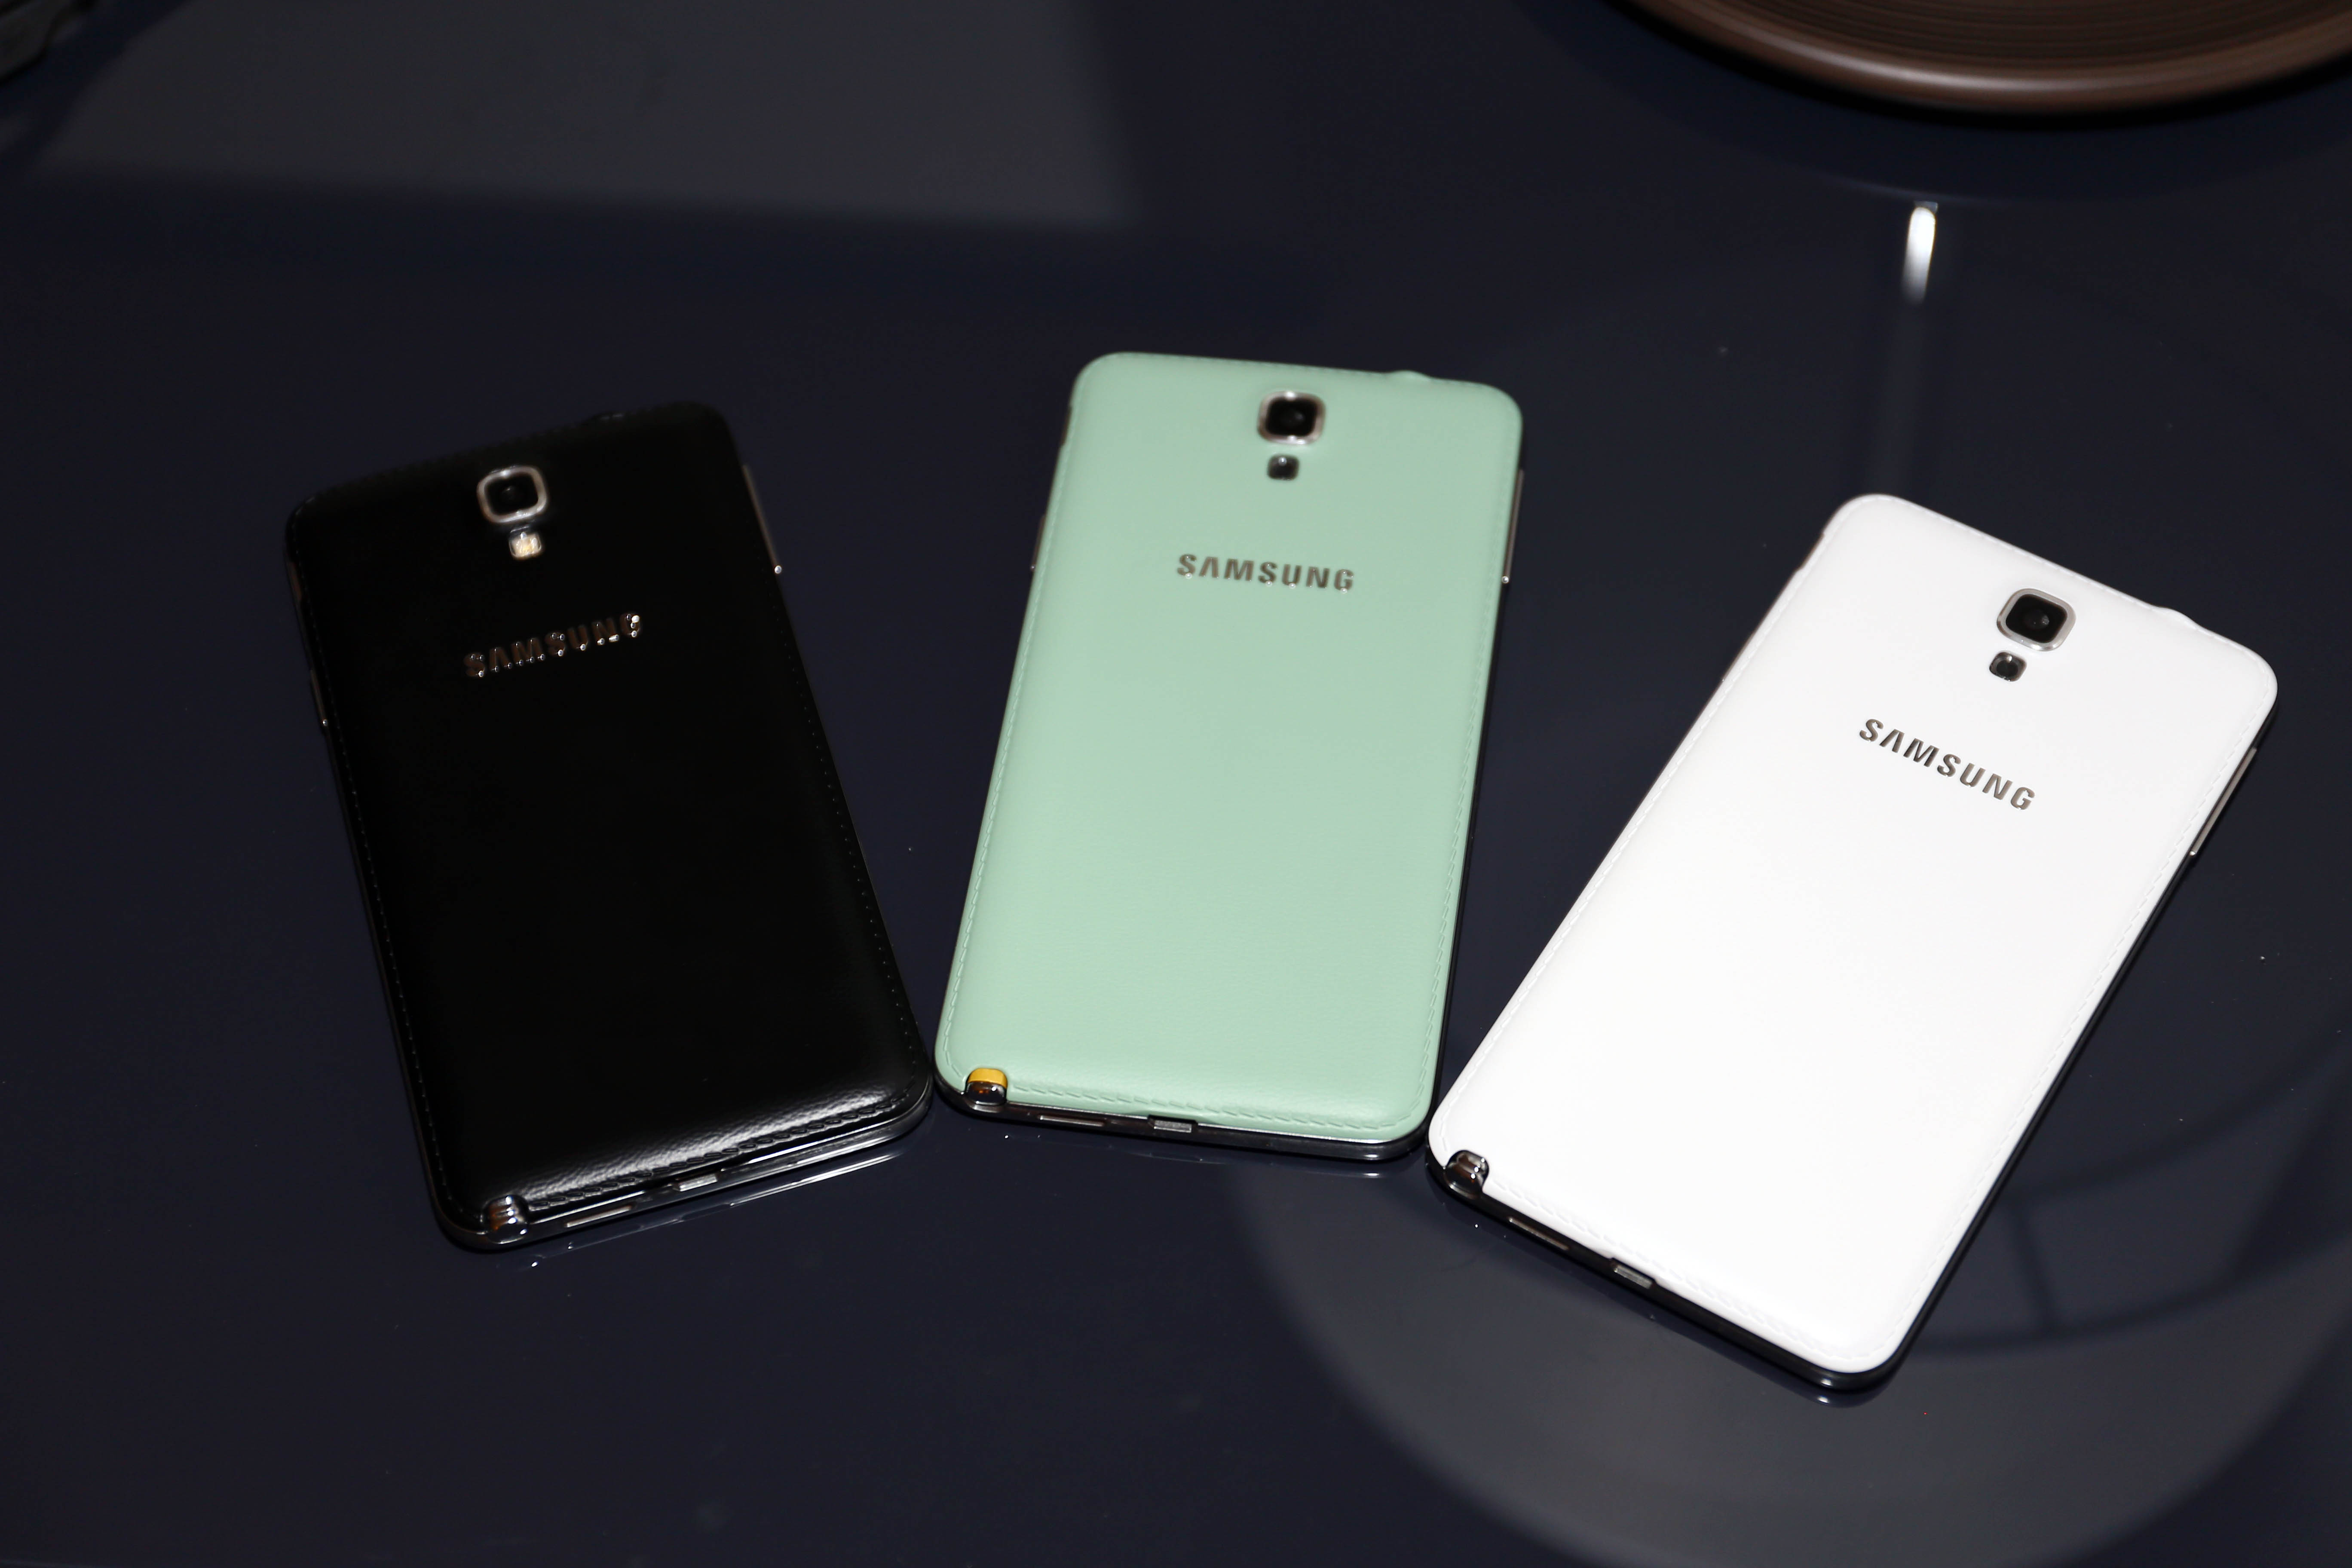 支援台灣全頻段LTE Samsung Galaxy Note 3 Neo一手試玩